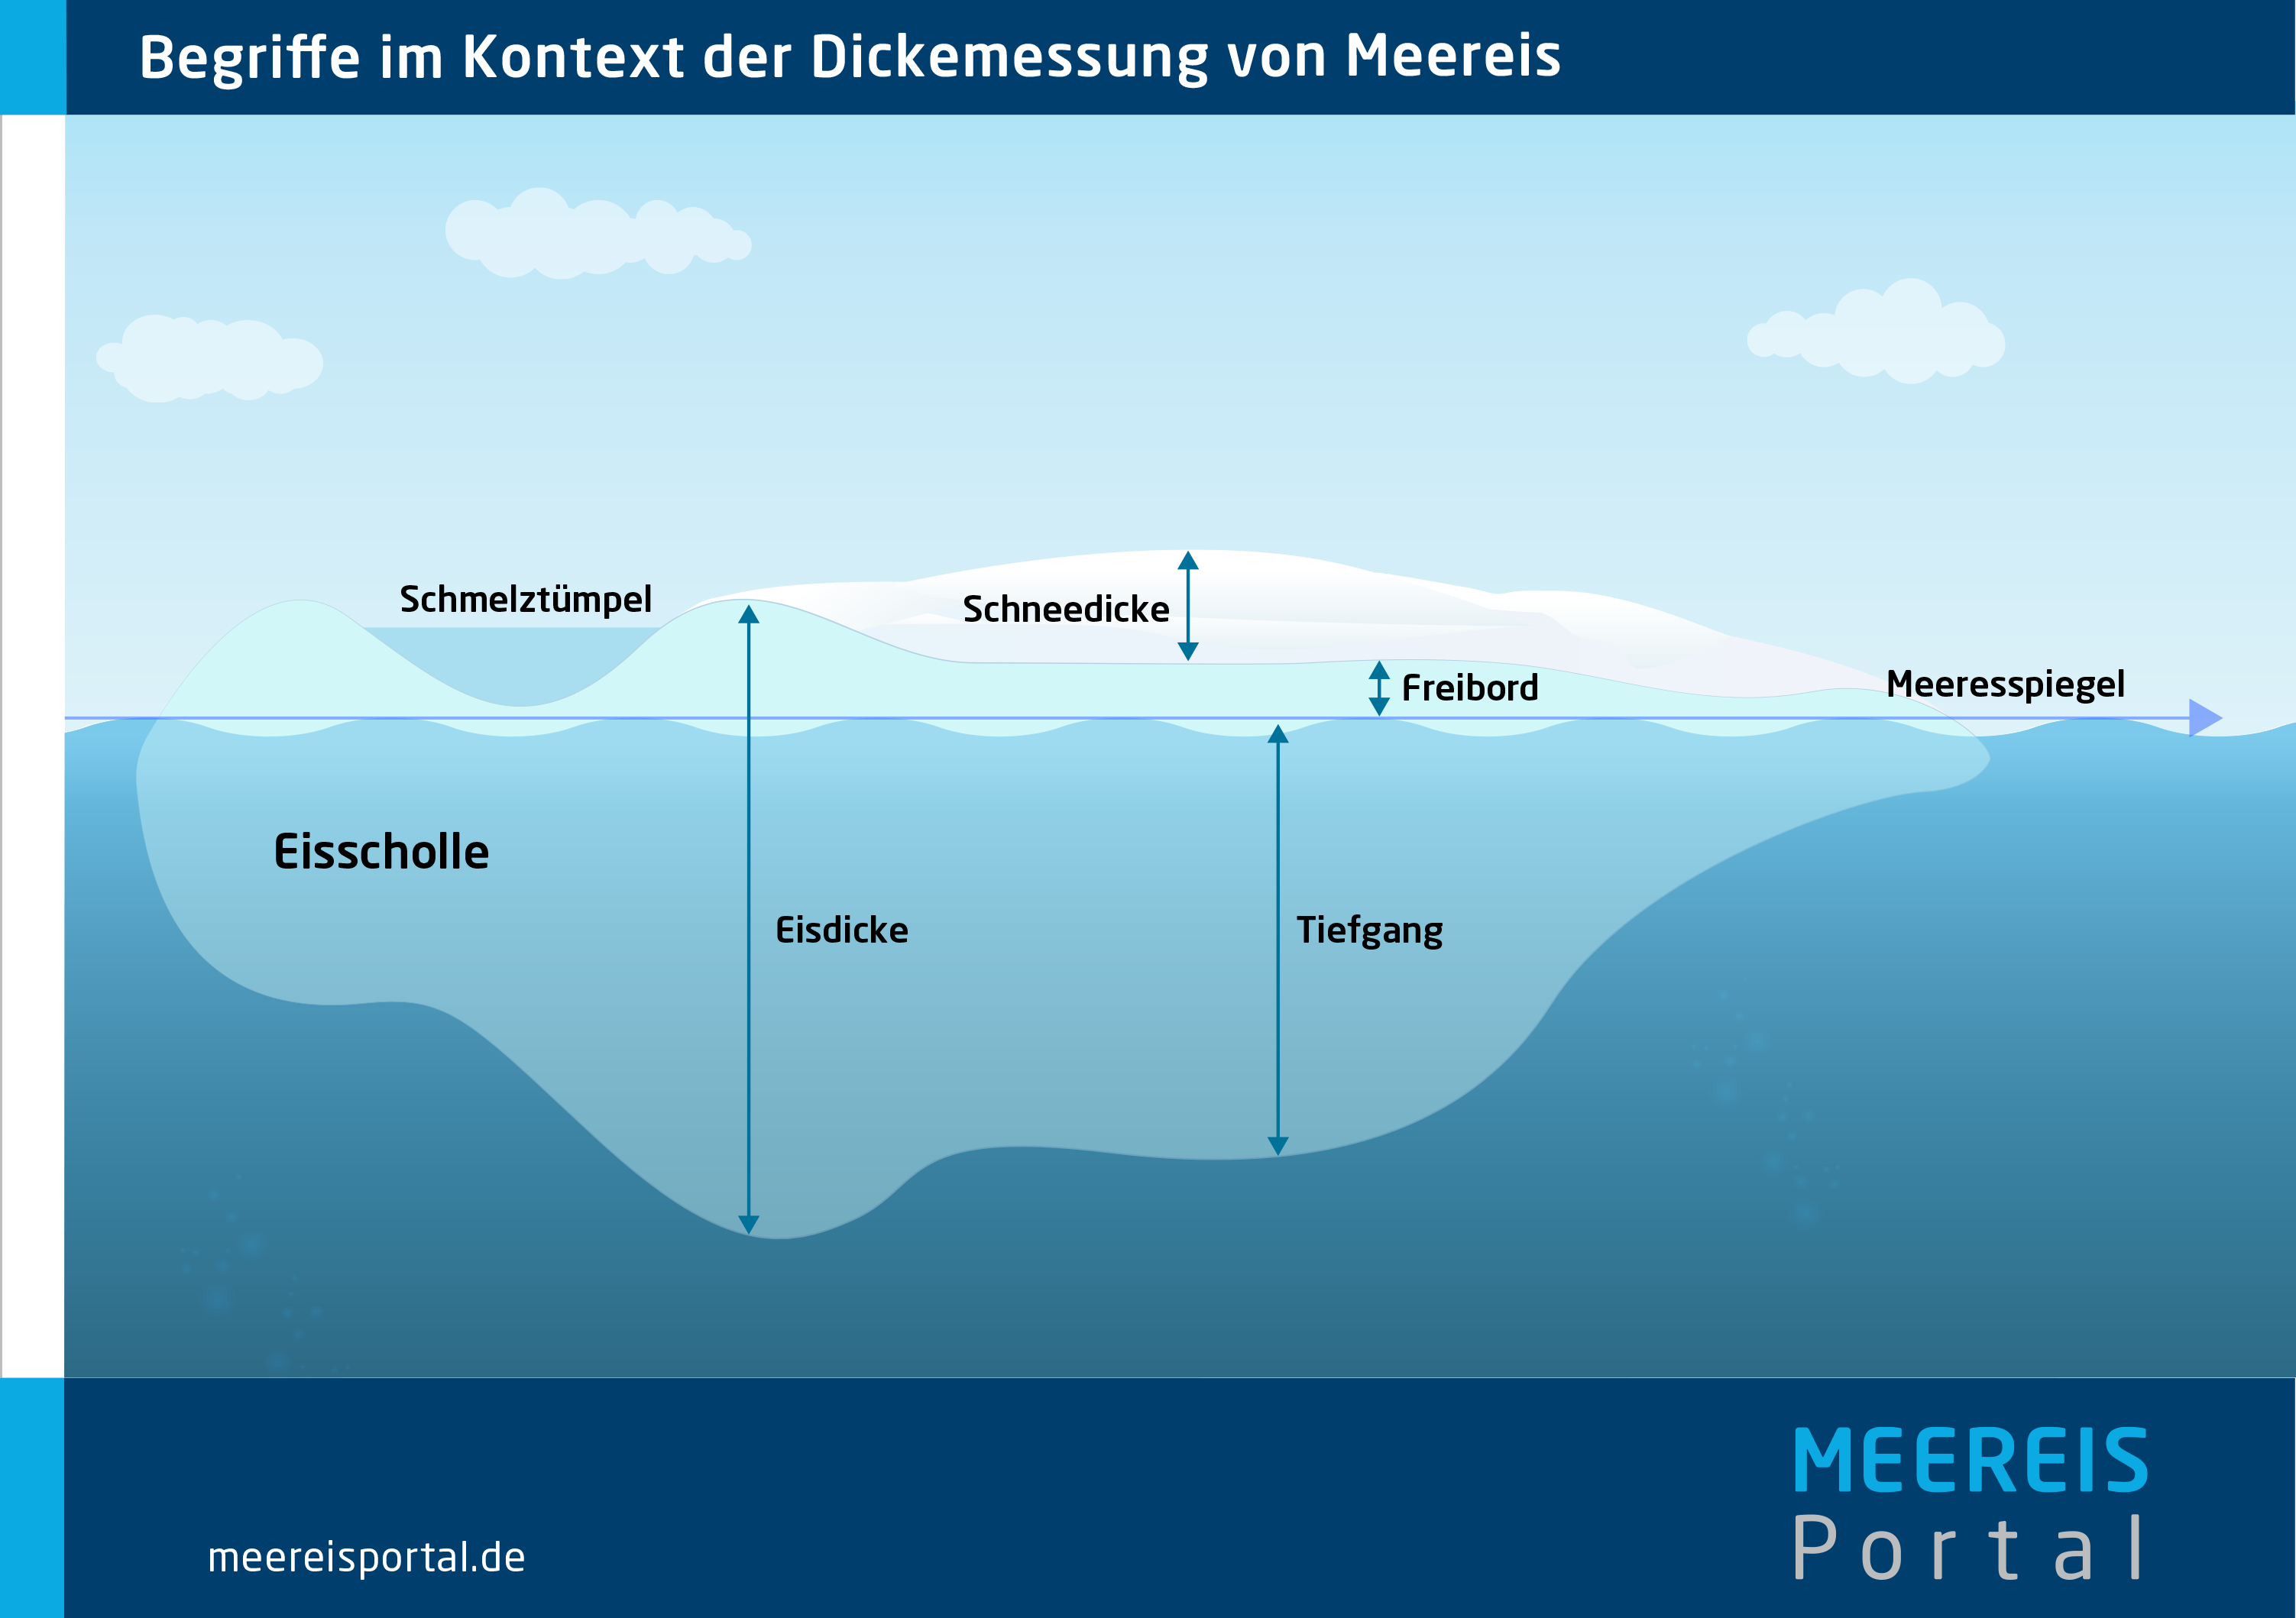 Begrifflichkeiten im Kontext von Meereisdickemessungen. 